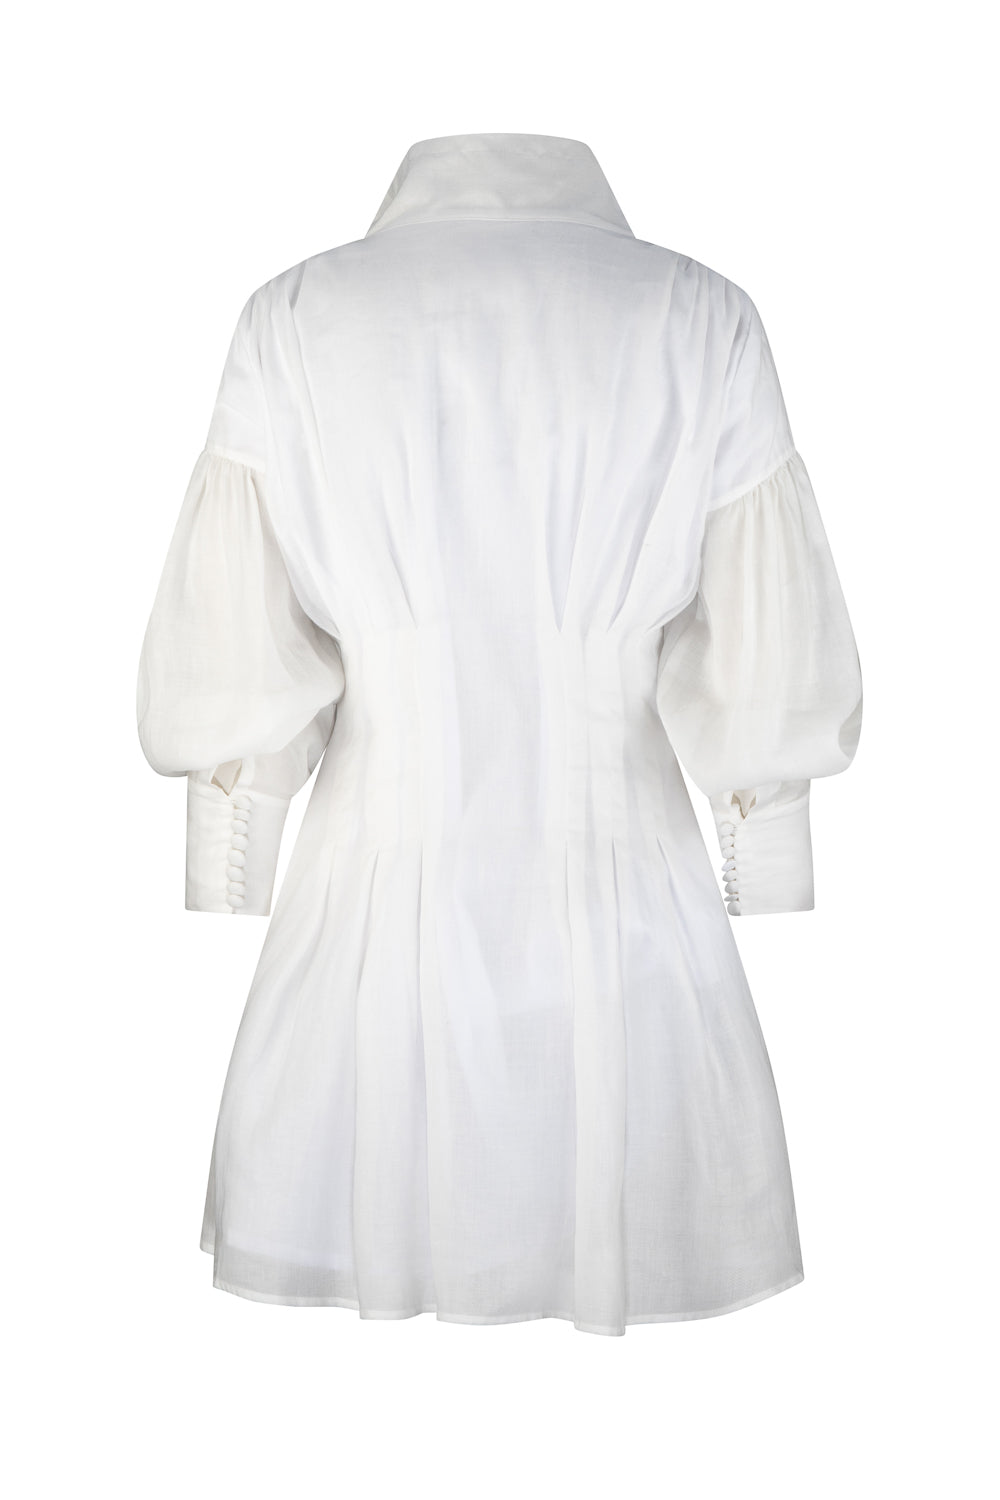 Monaco Dress - White